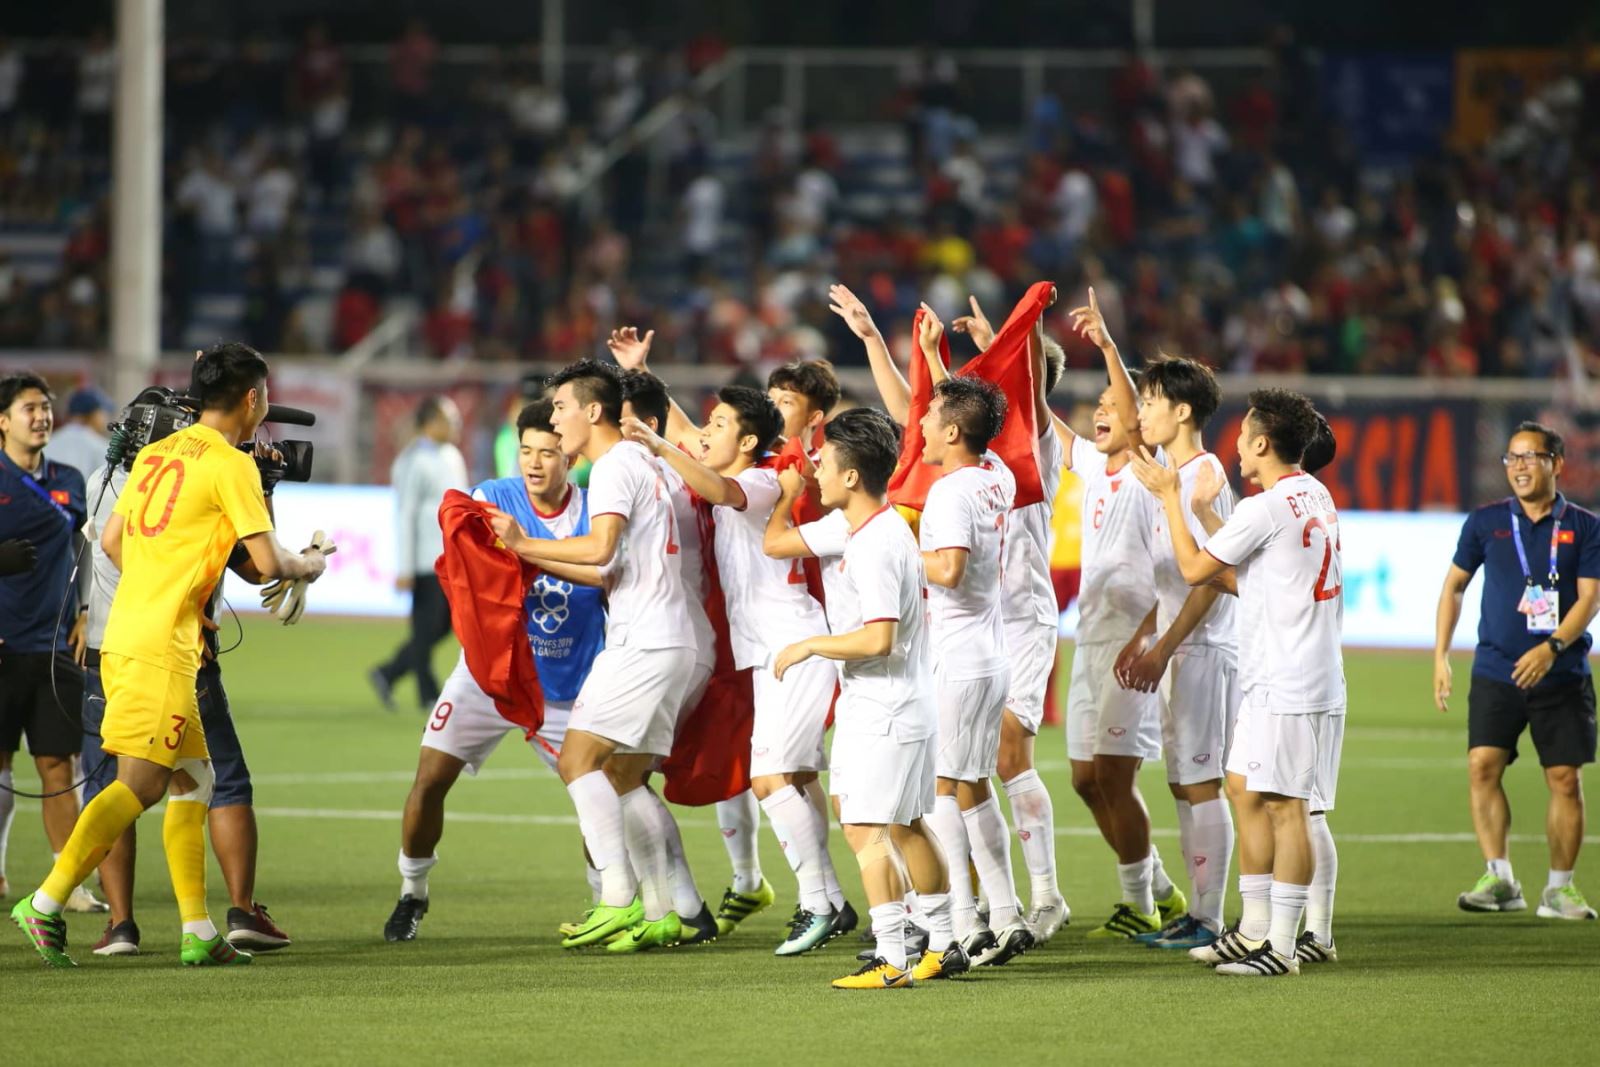 Đội tuyển bóng đá U22 Việt Nam ăn mừng chiến thắng cùng với chiếc áo mang số 19 của cầu thủ Nguyễn Quang Hải